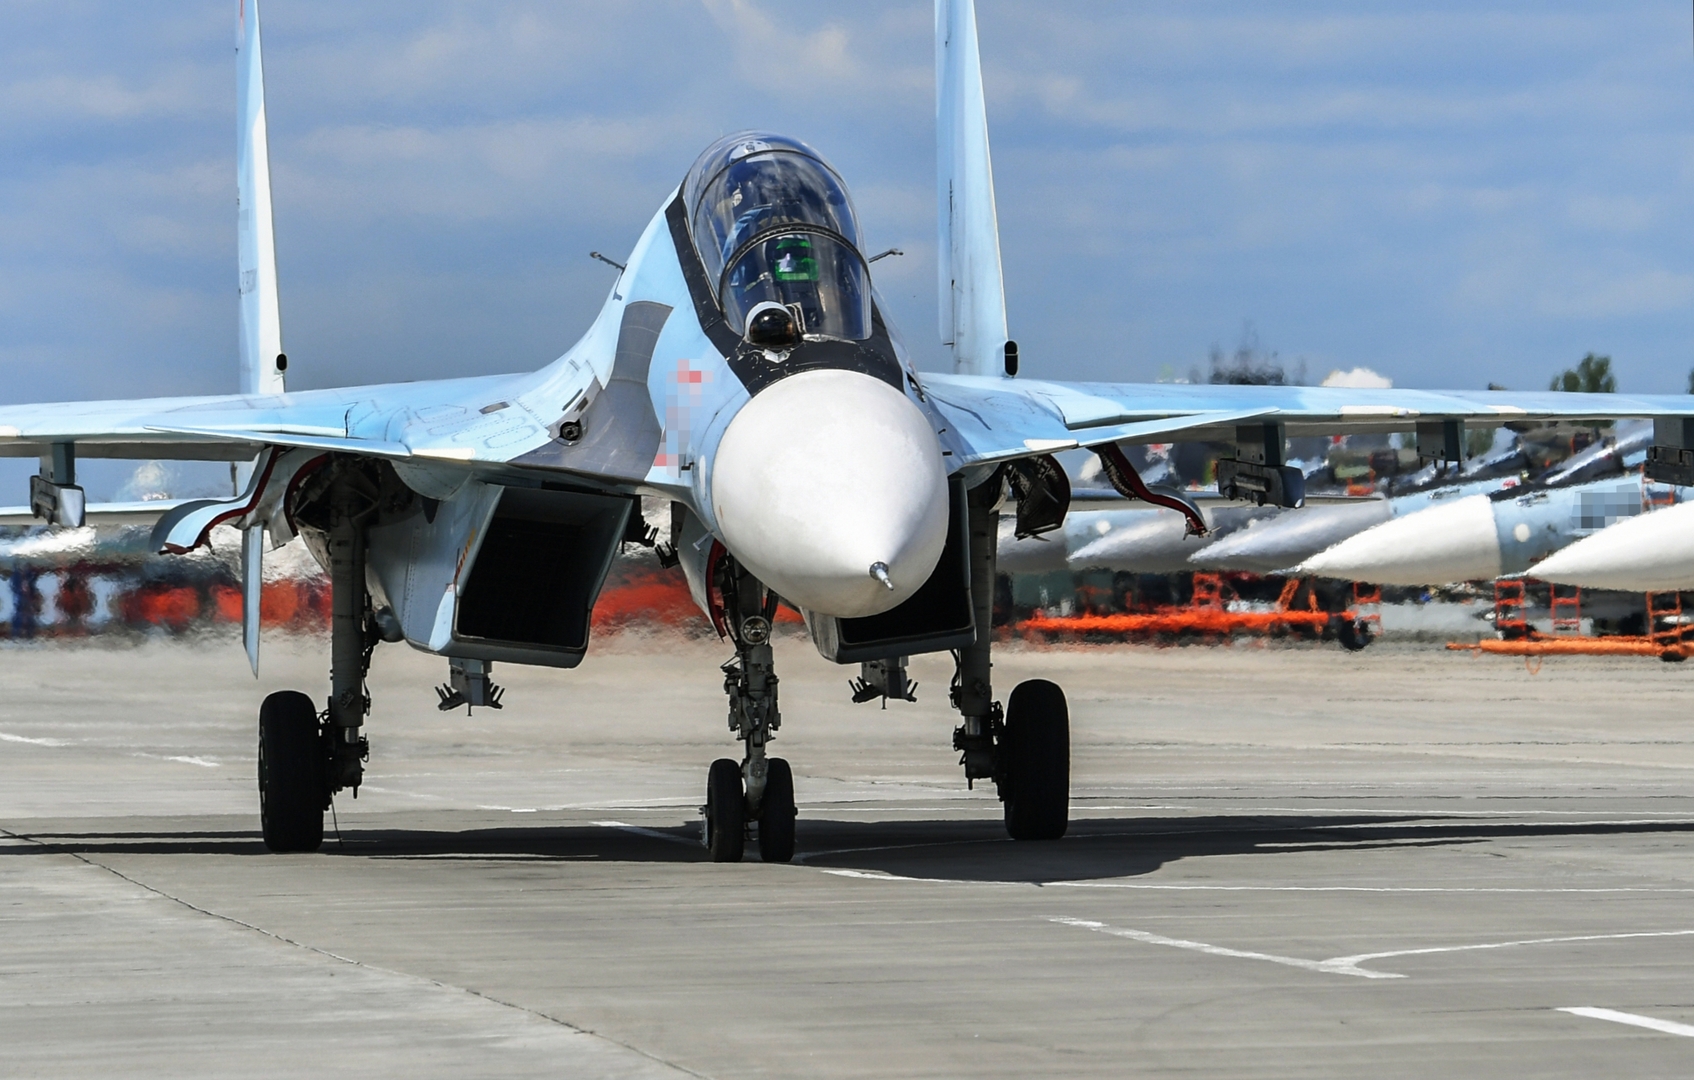 واشنطن تفرض عقوبات على القوات الجوية الروسية